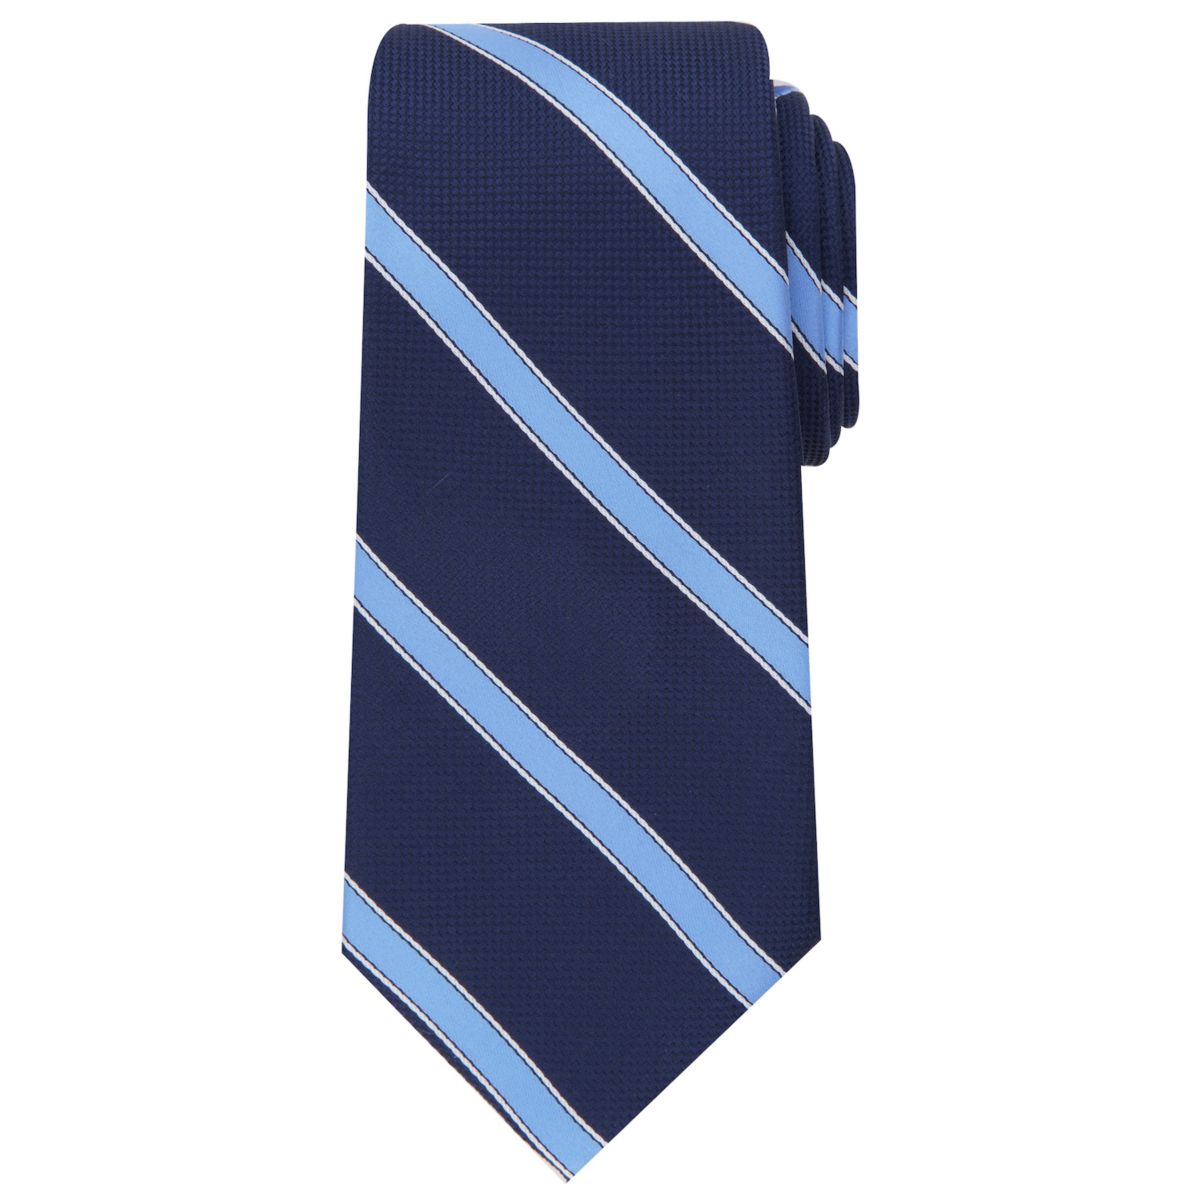 Удлиненный полосатый галстук Big & Tall Bespoke Trotter в полоску Bespoke